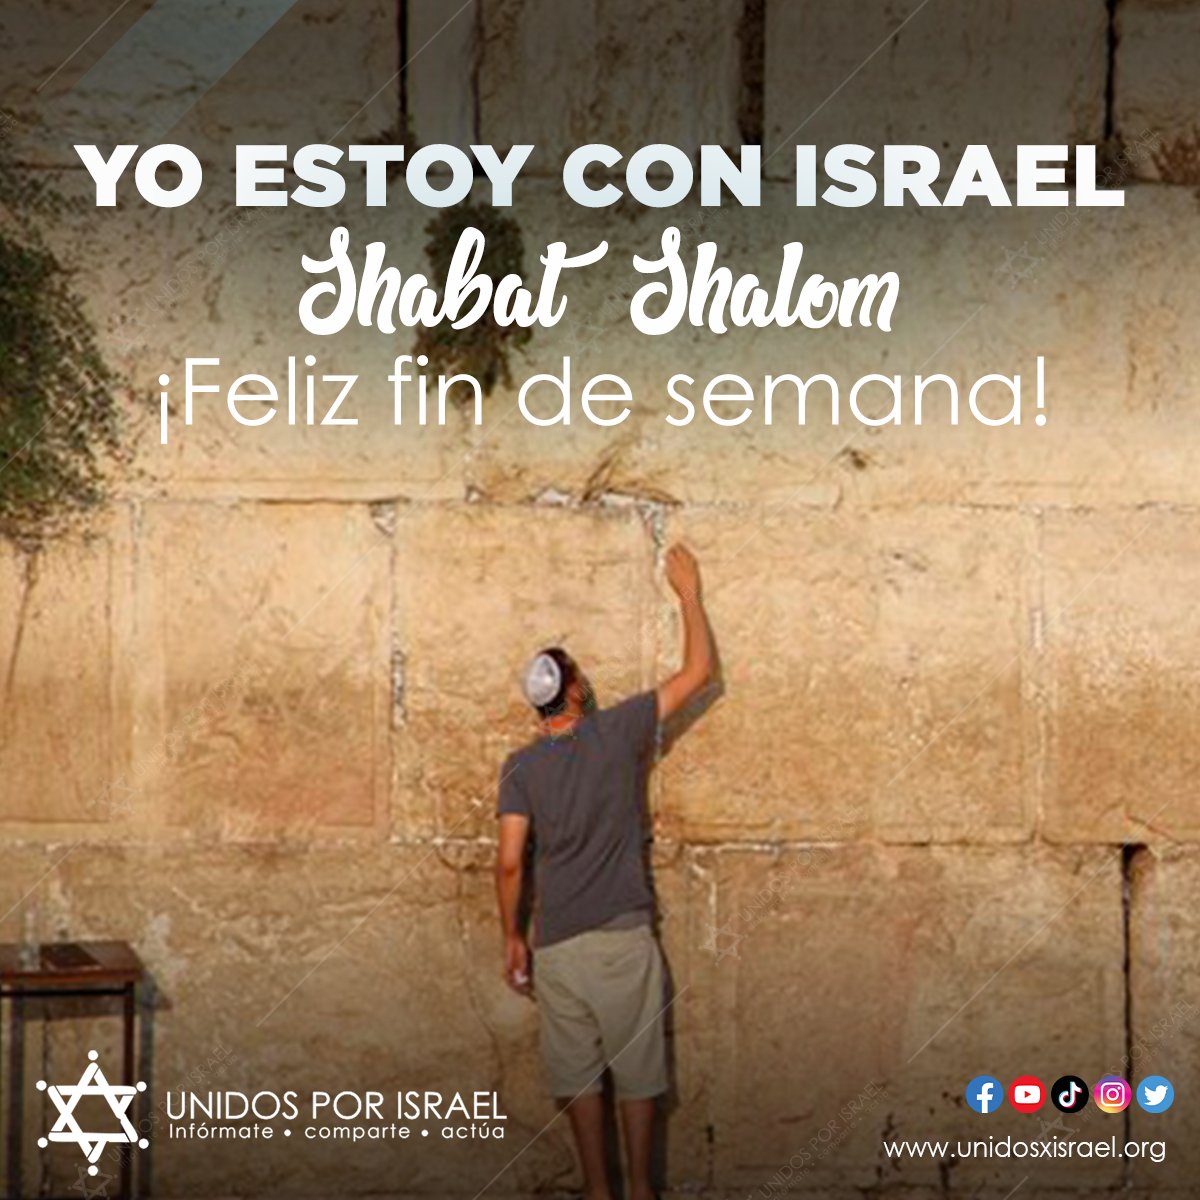 Que reine la #Paz en #Israel y en el mundo! #shabatshalom #felizfindesemana #unidosxisrael